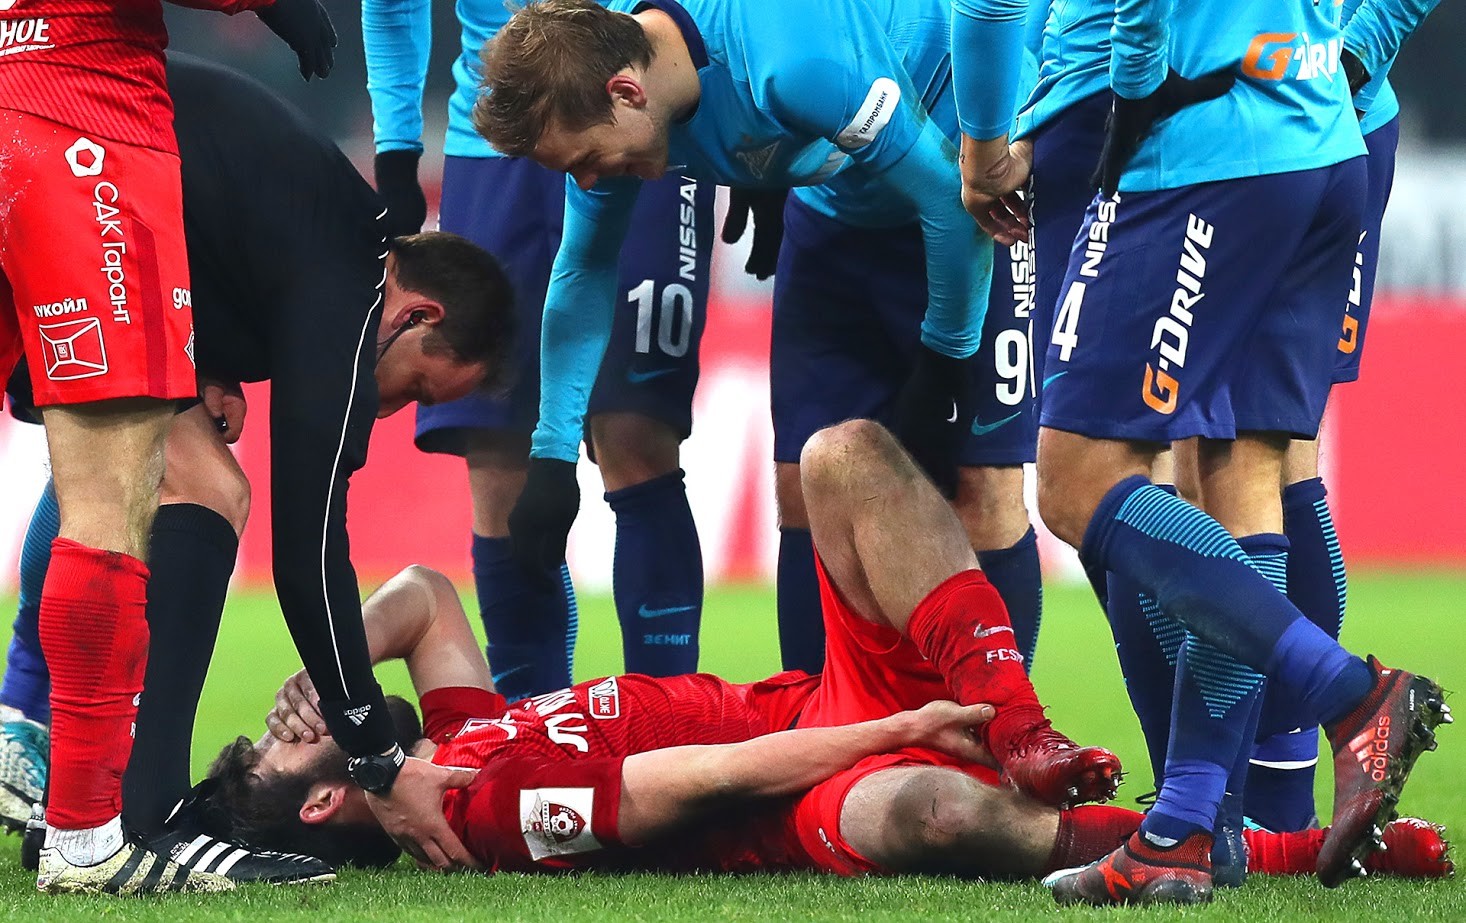 Up ruske reprezentance Georgij Džikija bo verjetno manjkal na svetovnem prvenstvu zaradi januarska poškodbe.